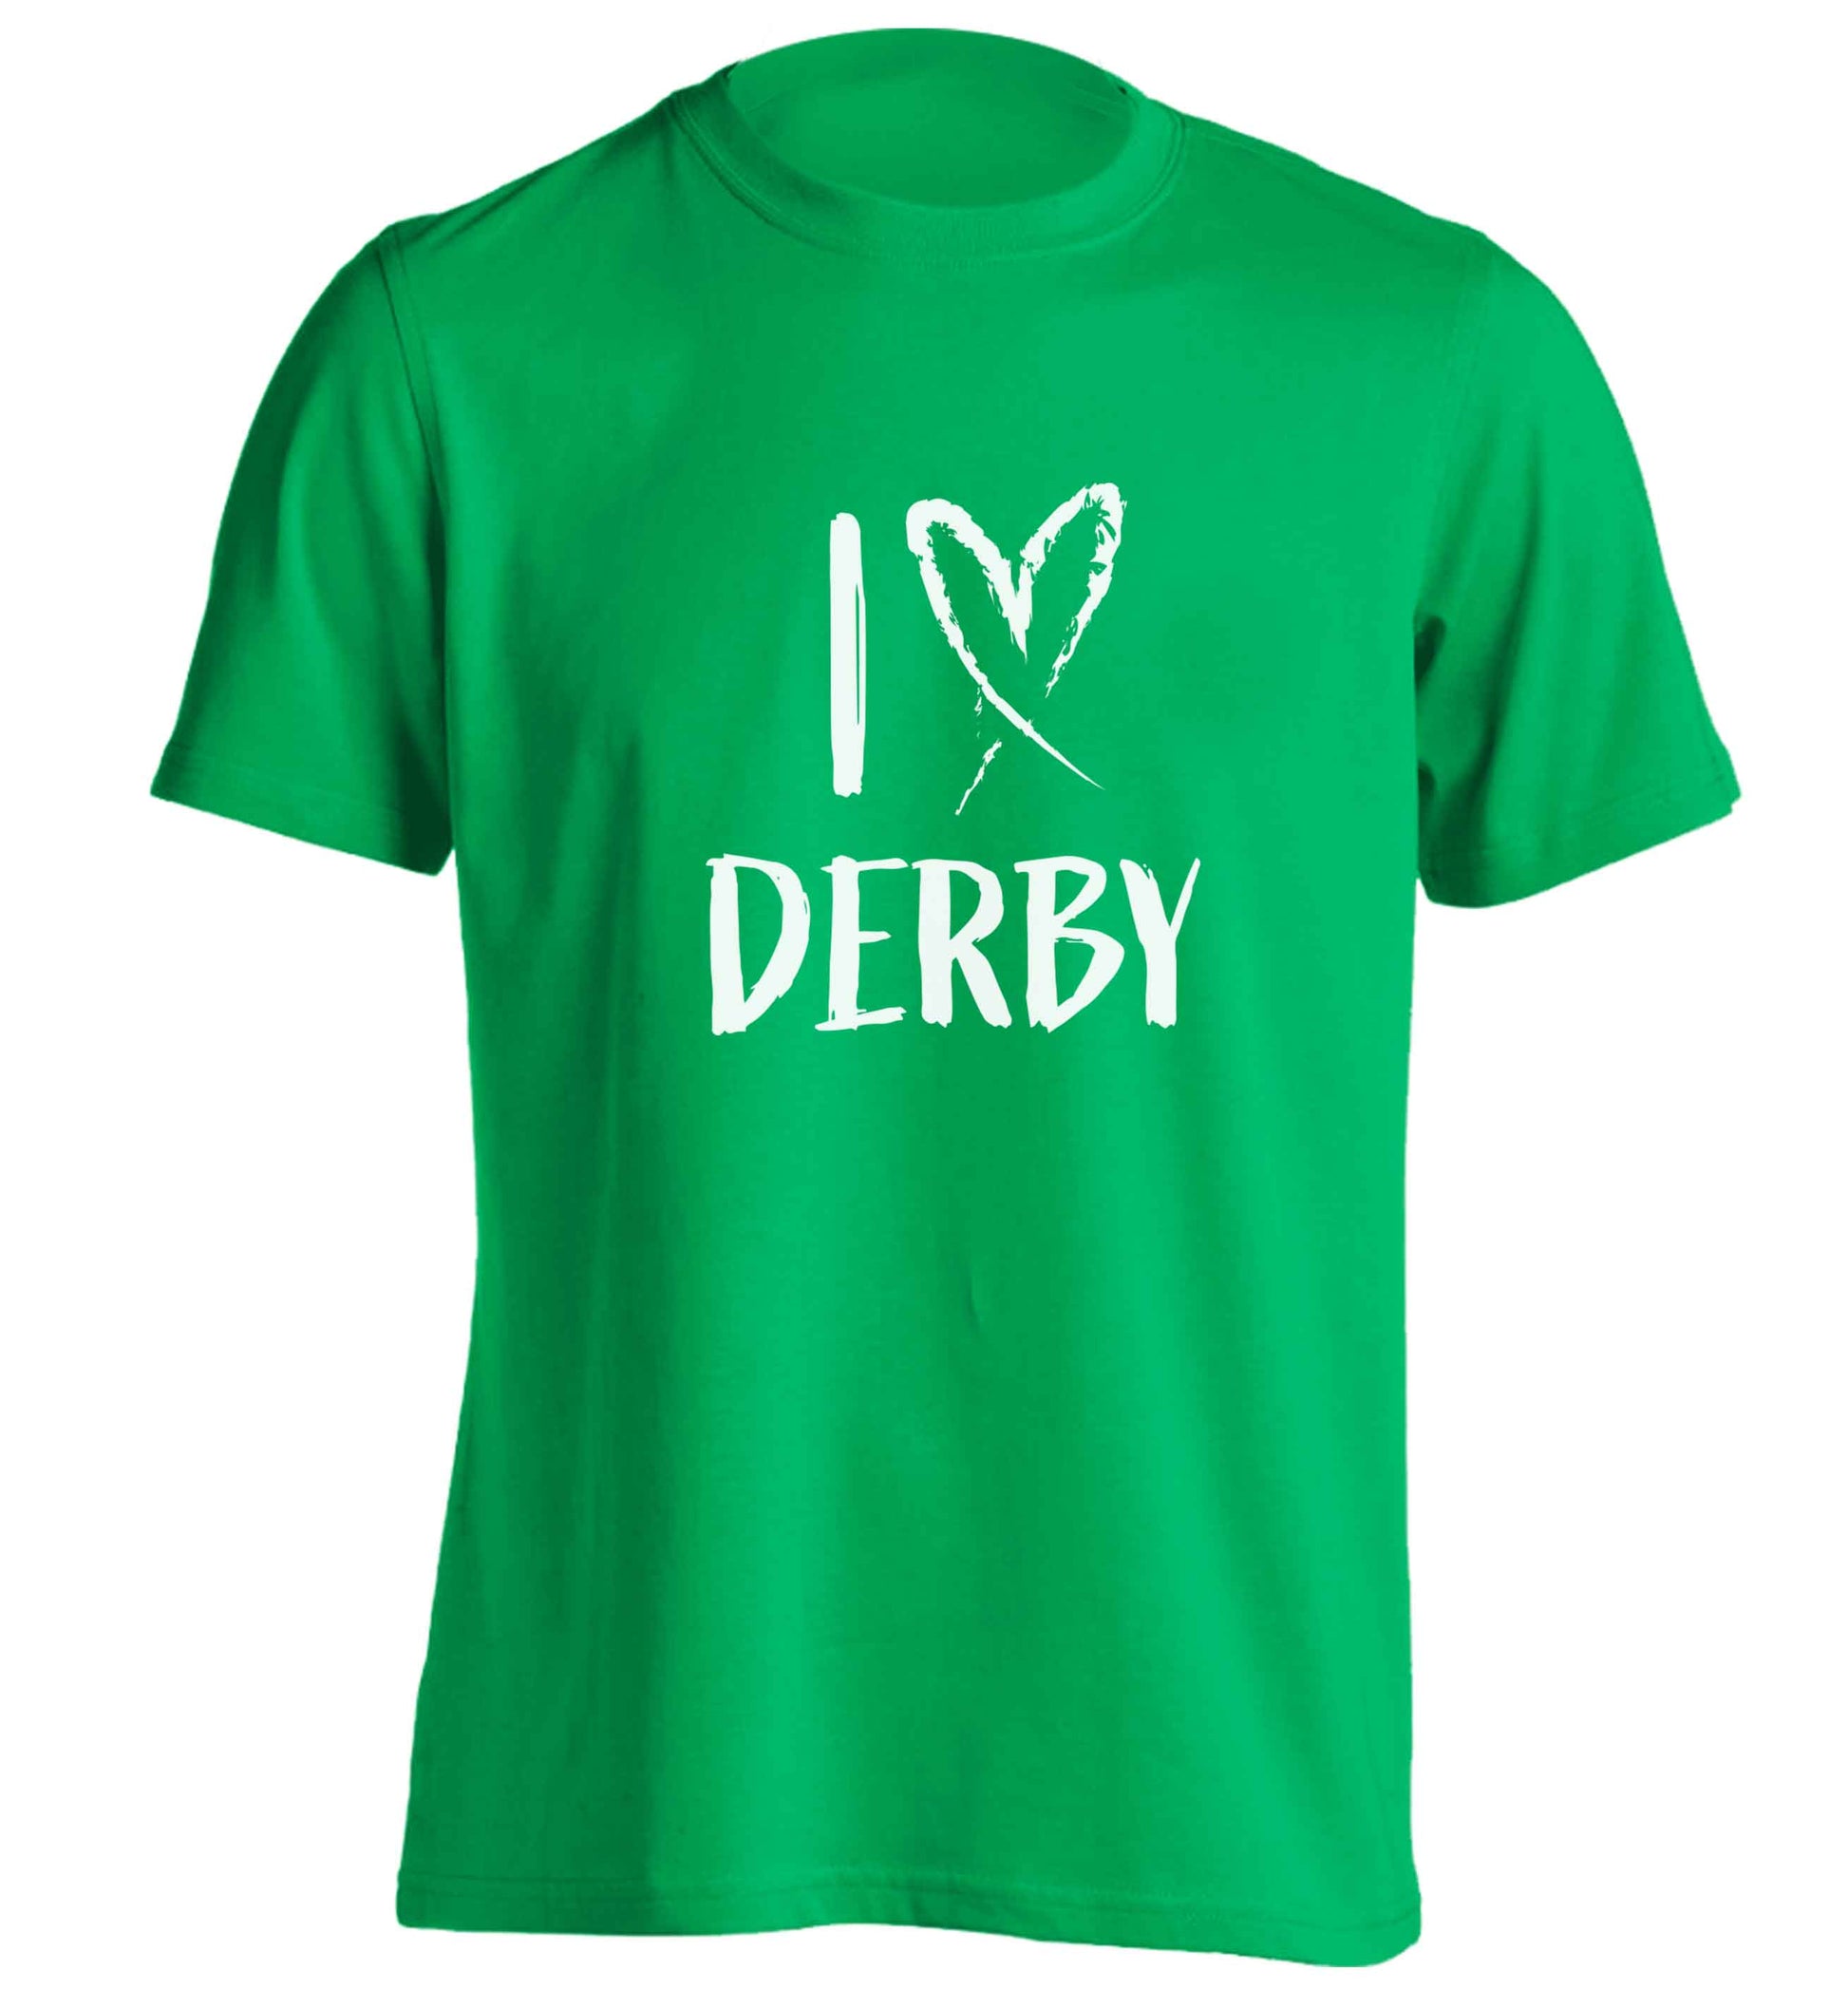 I love Derby adults unisex green Tshirt 2XL